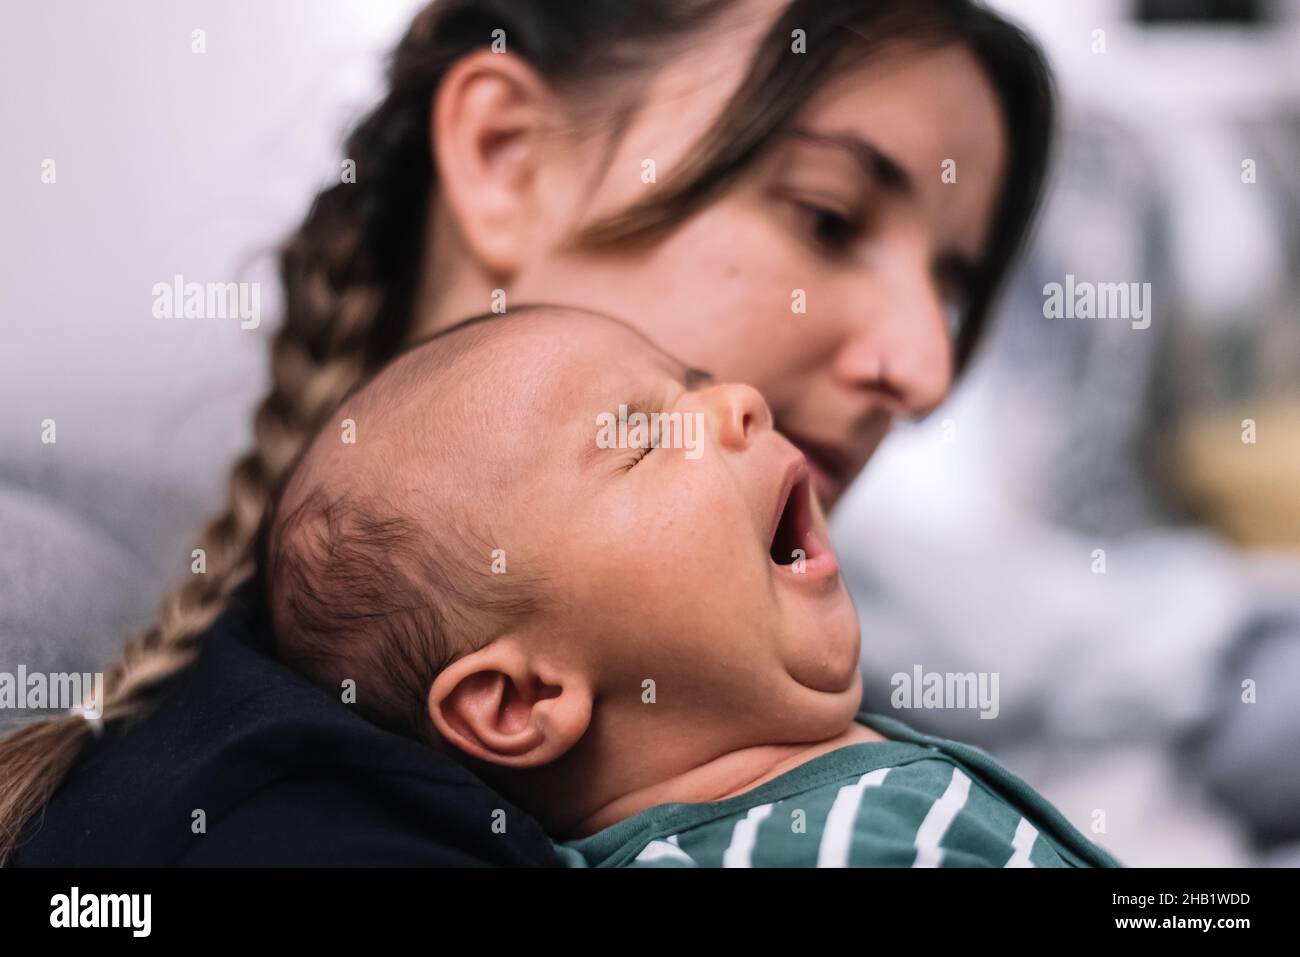 Retrato de madre y bebé. Bostezando bebé Foto de stock